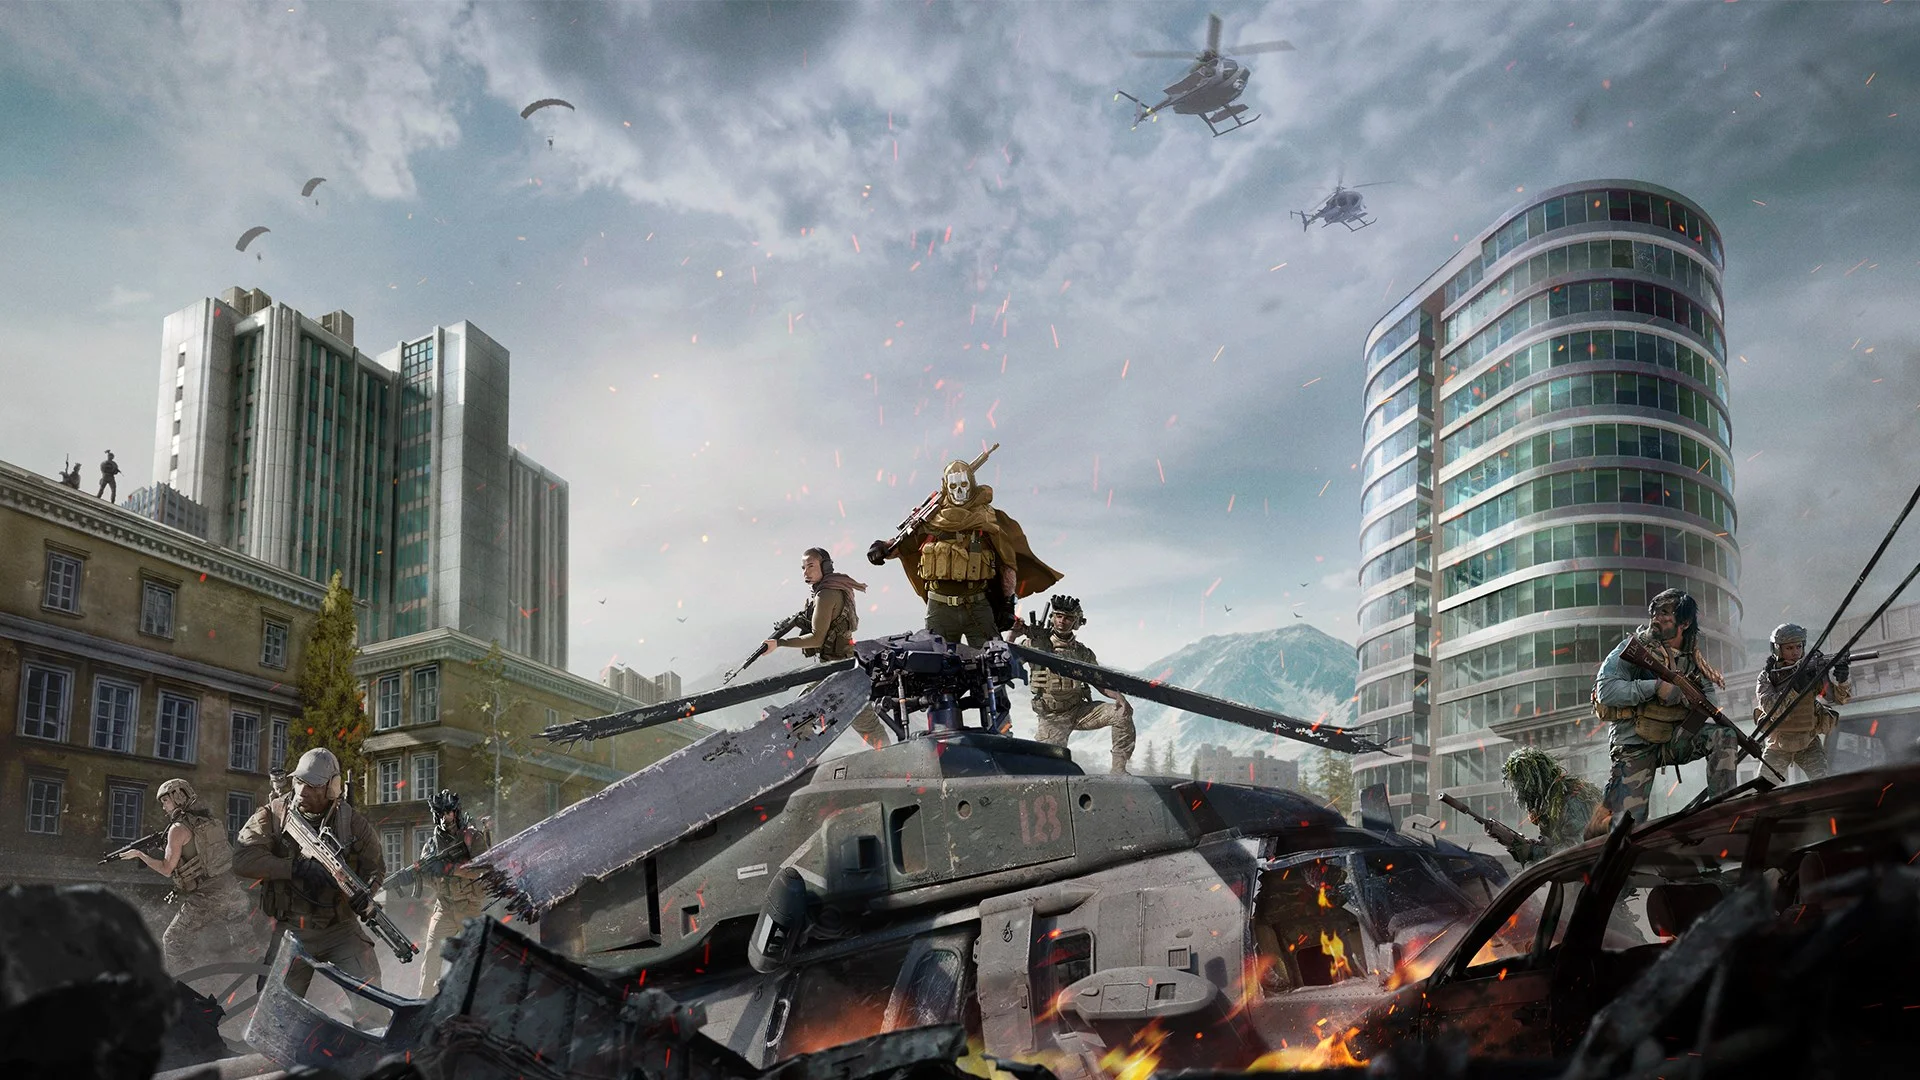 Call of Duty: Warzone вышла 10 марта, преодолела отметку в 60 миллионов игроков меньше чем за два месяца и, похоже, не планирует сбавлять обороты. Чтобы помочь новым игрокам, Activision выпустила подробное руководство по игре. Мы изучили его, сравнили с тактиками, которые выработали игроки, и собрали для вас самые полезные советы. В этом гайде речь пойдет о наиболее эффективных комбинациях оружия, экипировки и перков — все, чтобы не пасть смертью храбрых в первые же минуты матча.